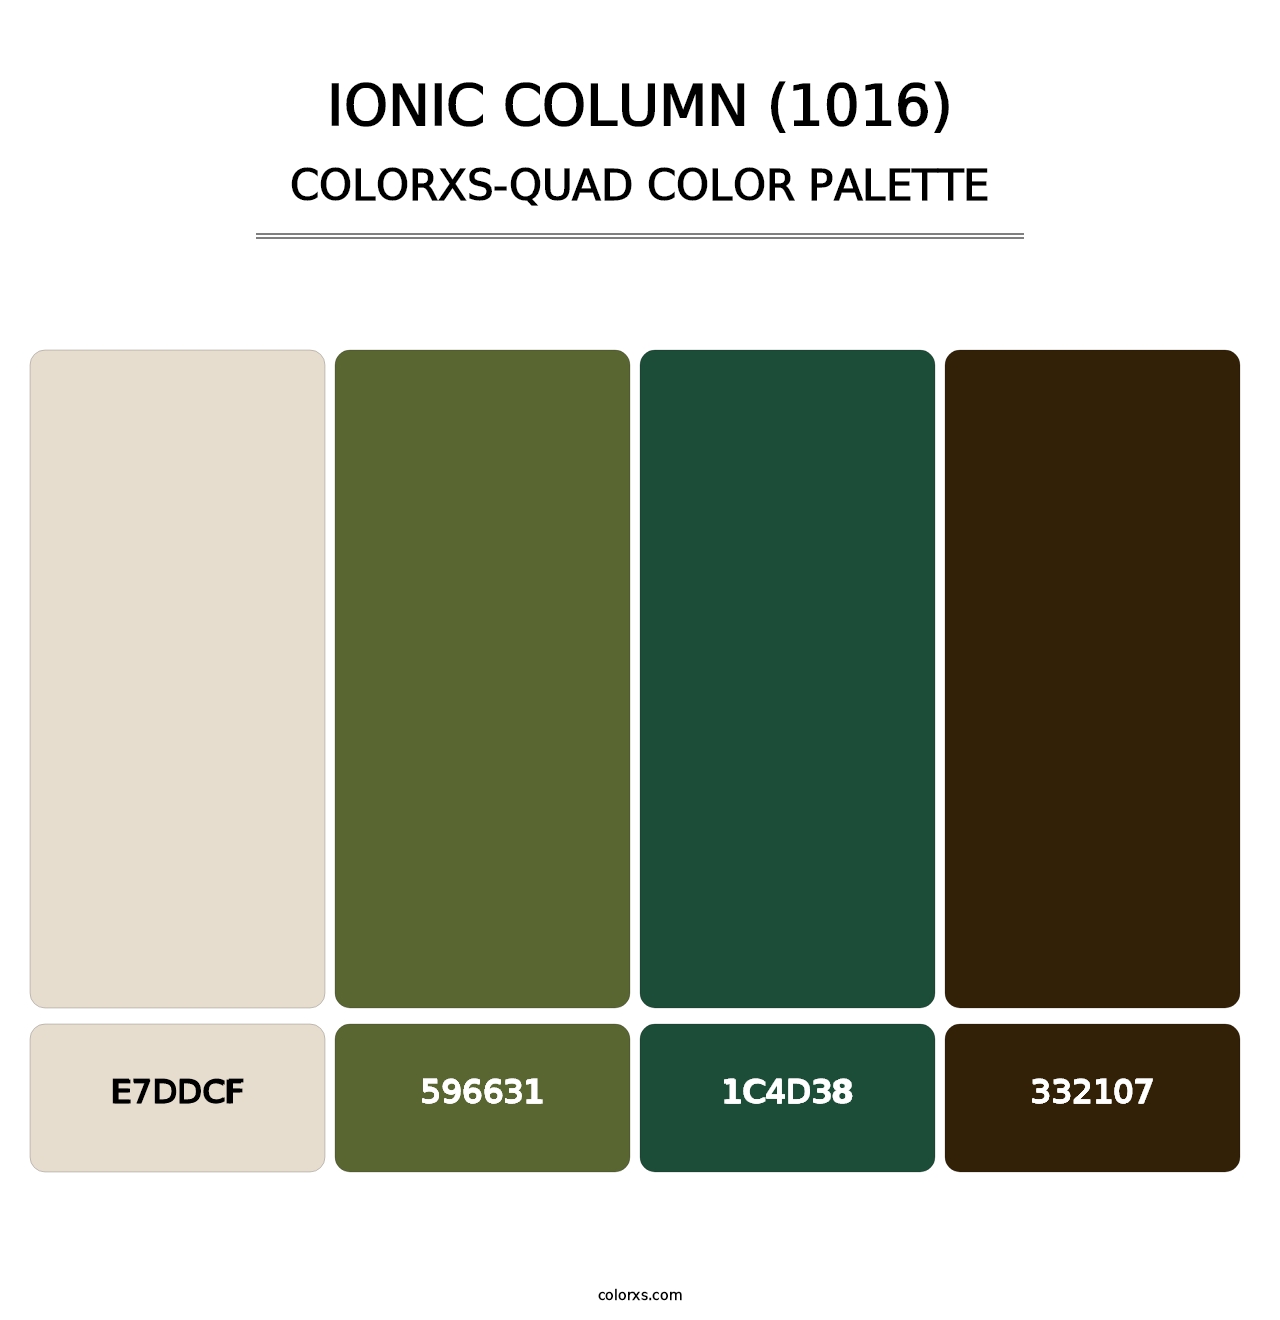 Ionic Column (1016) - Colorxs Quad Palette